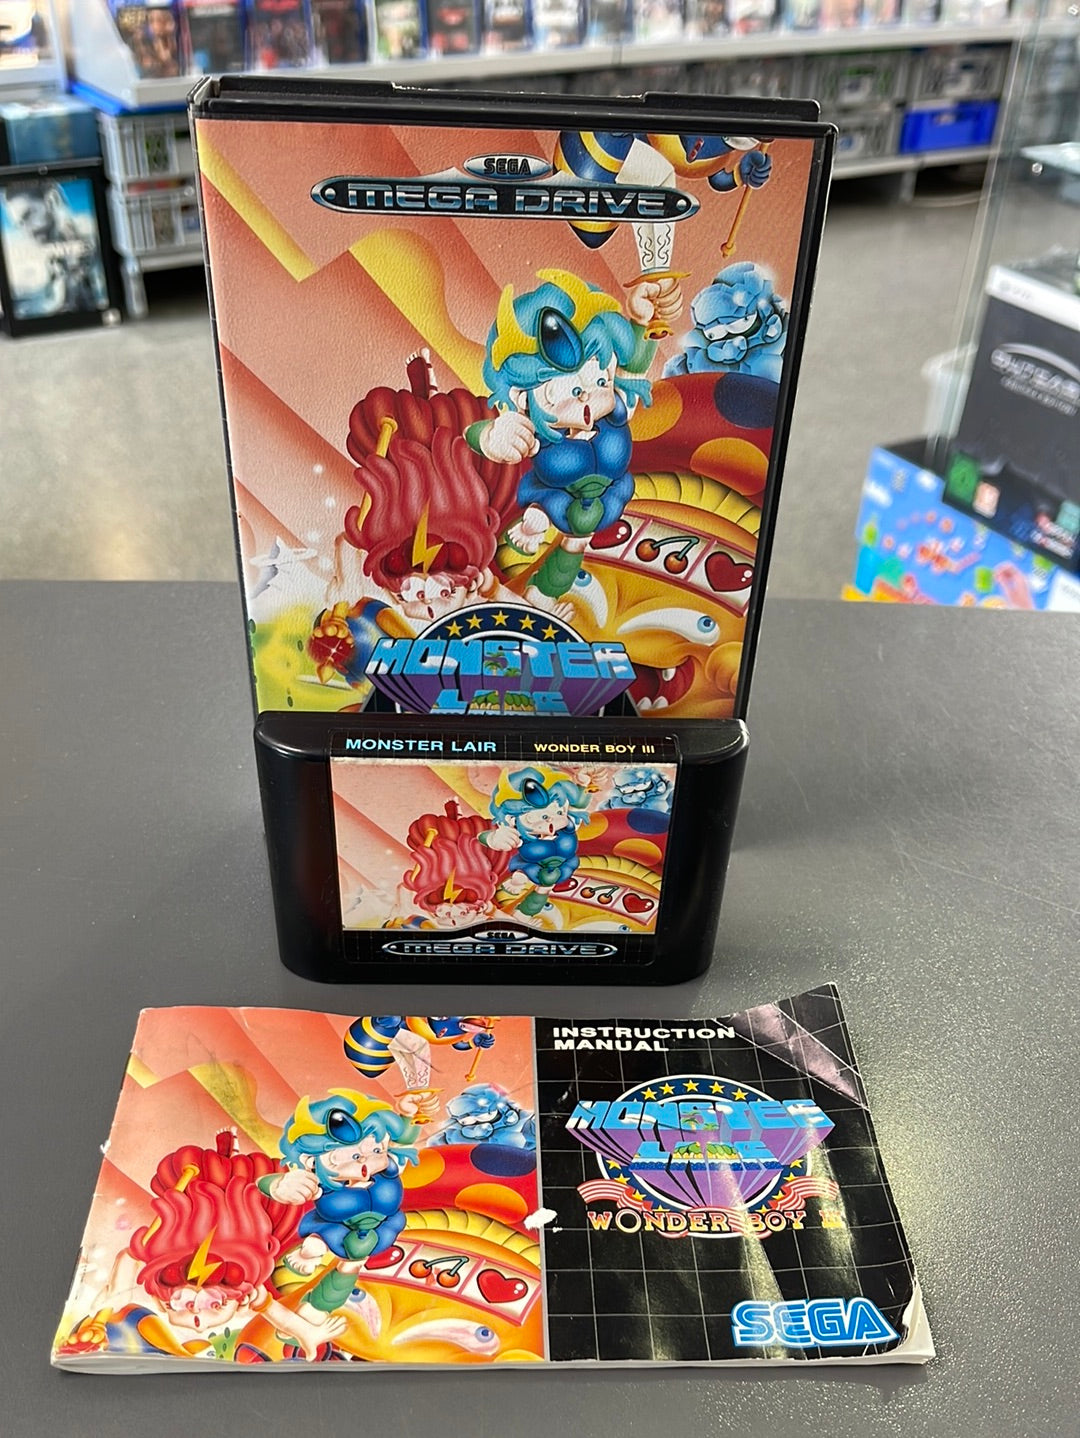 Sega Mega Drive Wonder Boy 3